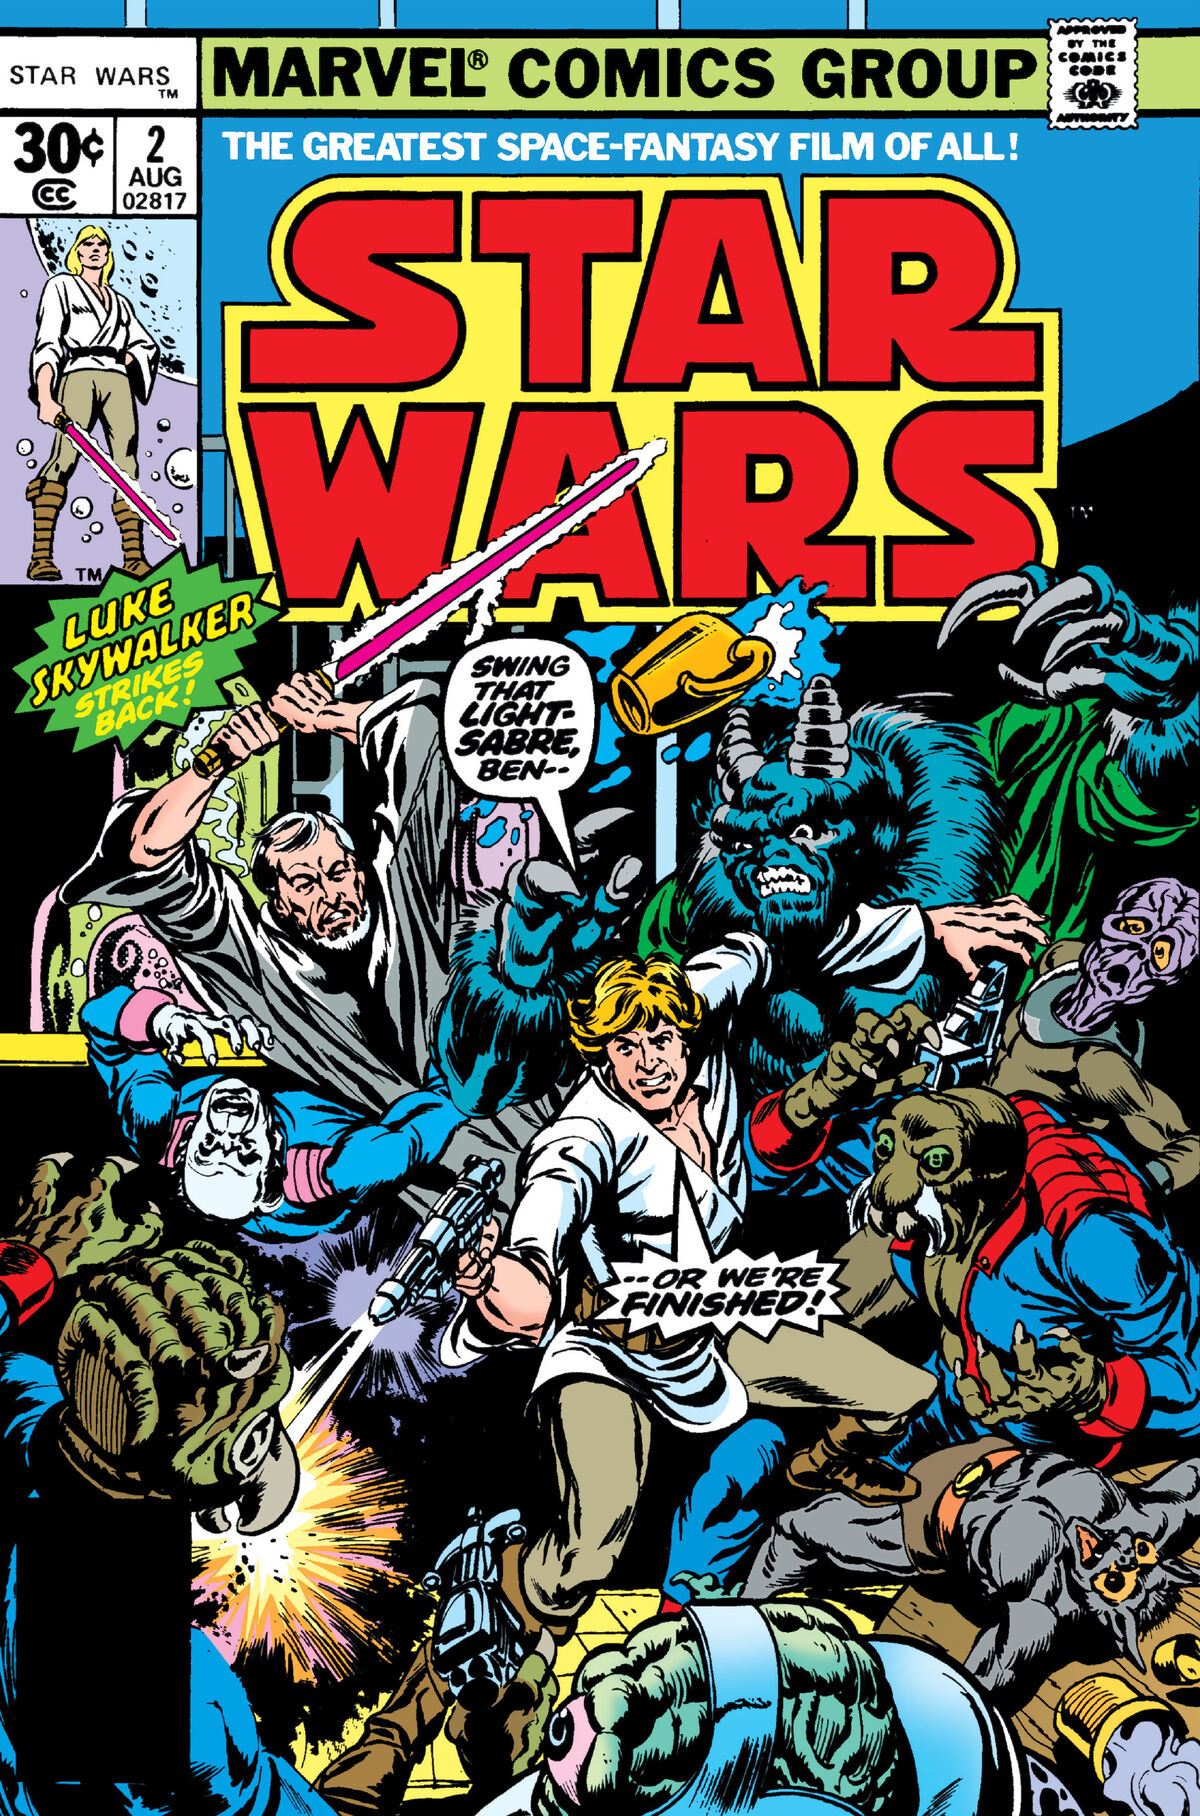 Space Wars 1977  Star wars comic books, Star wars comics, Star wars